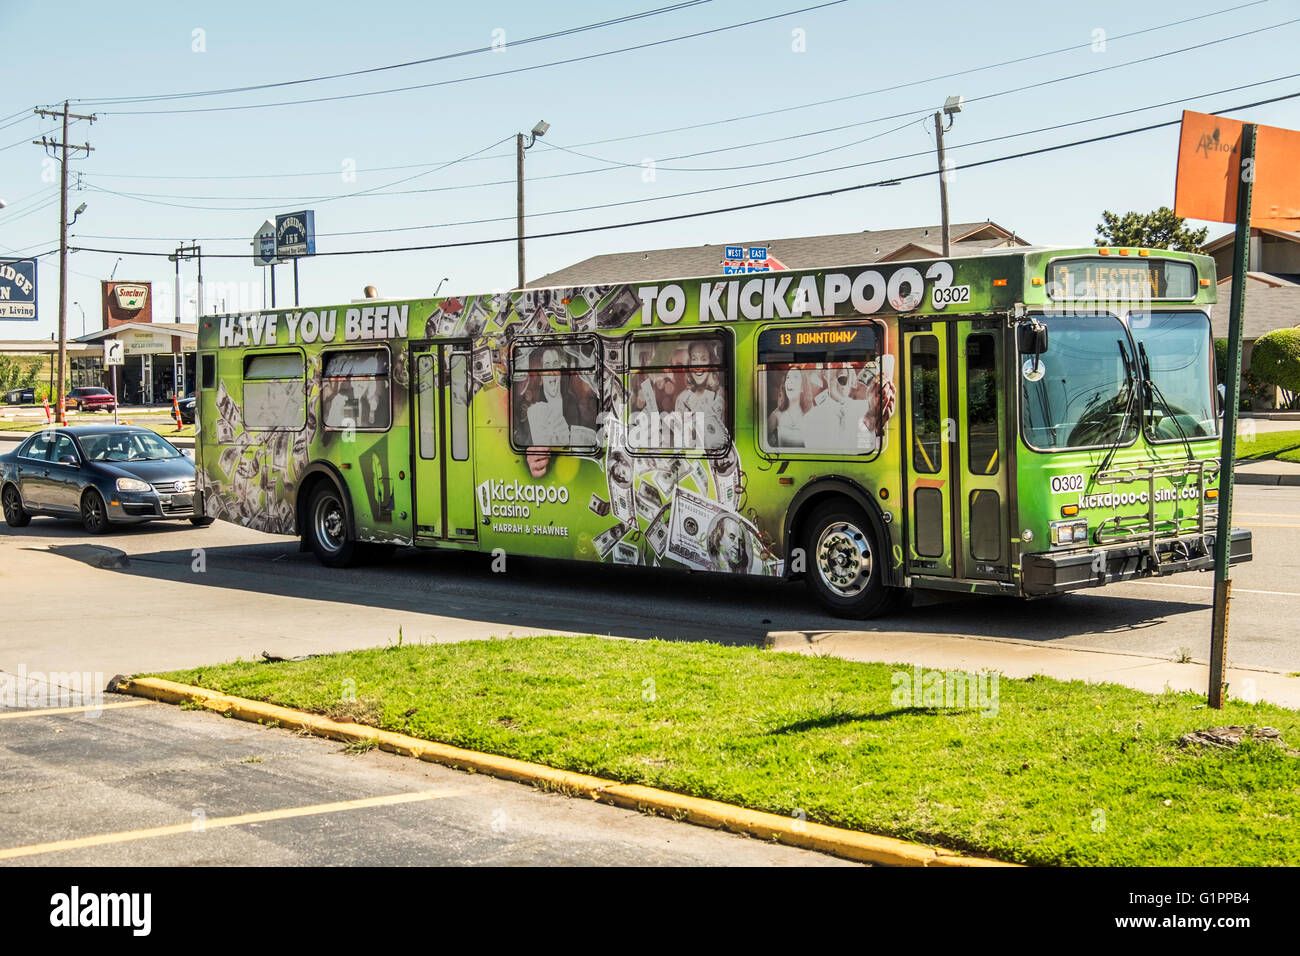 An Oklahoma City public transportation bus on a street. Advertising Kickapoo Casino. Oklahoma, USA. Stock Photo